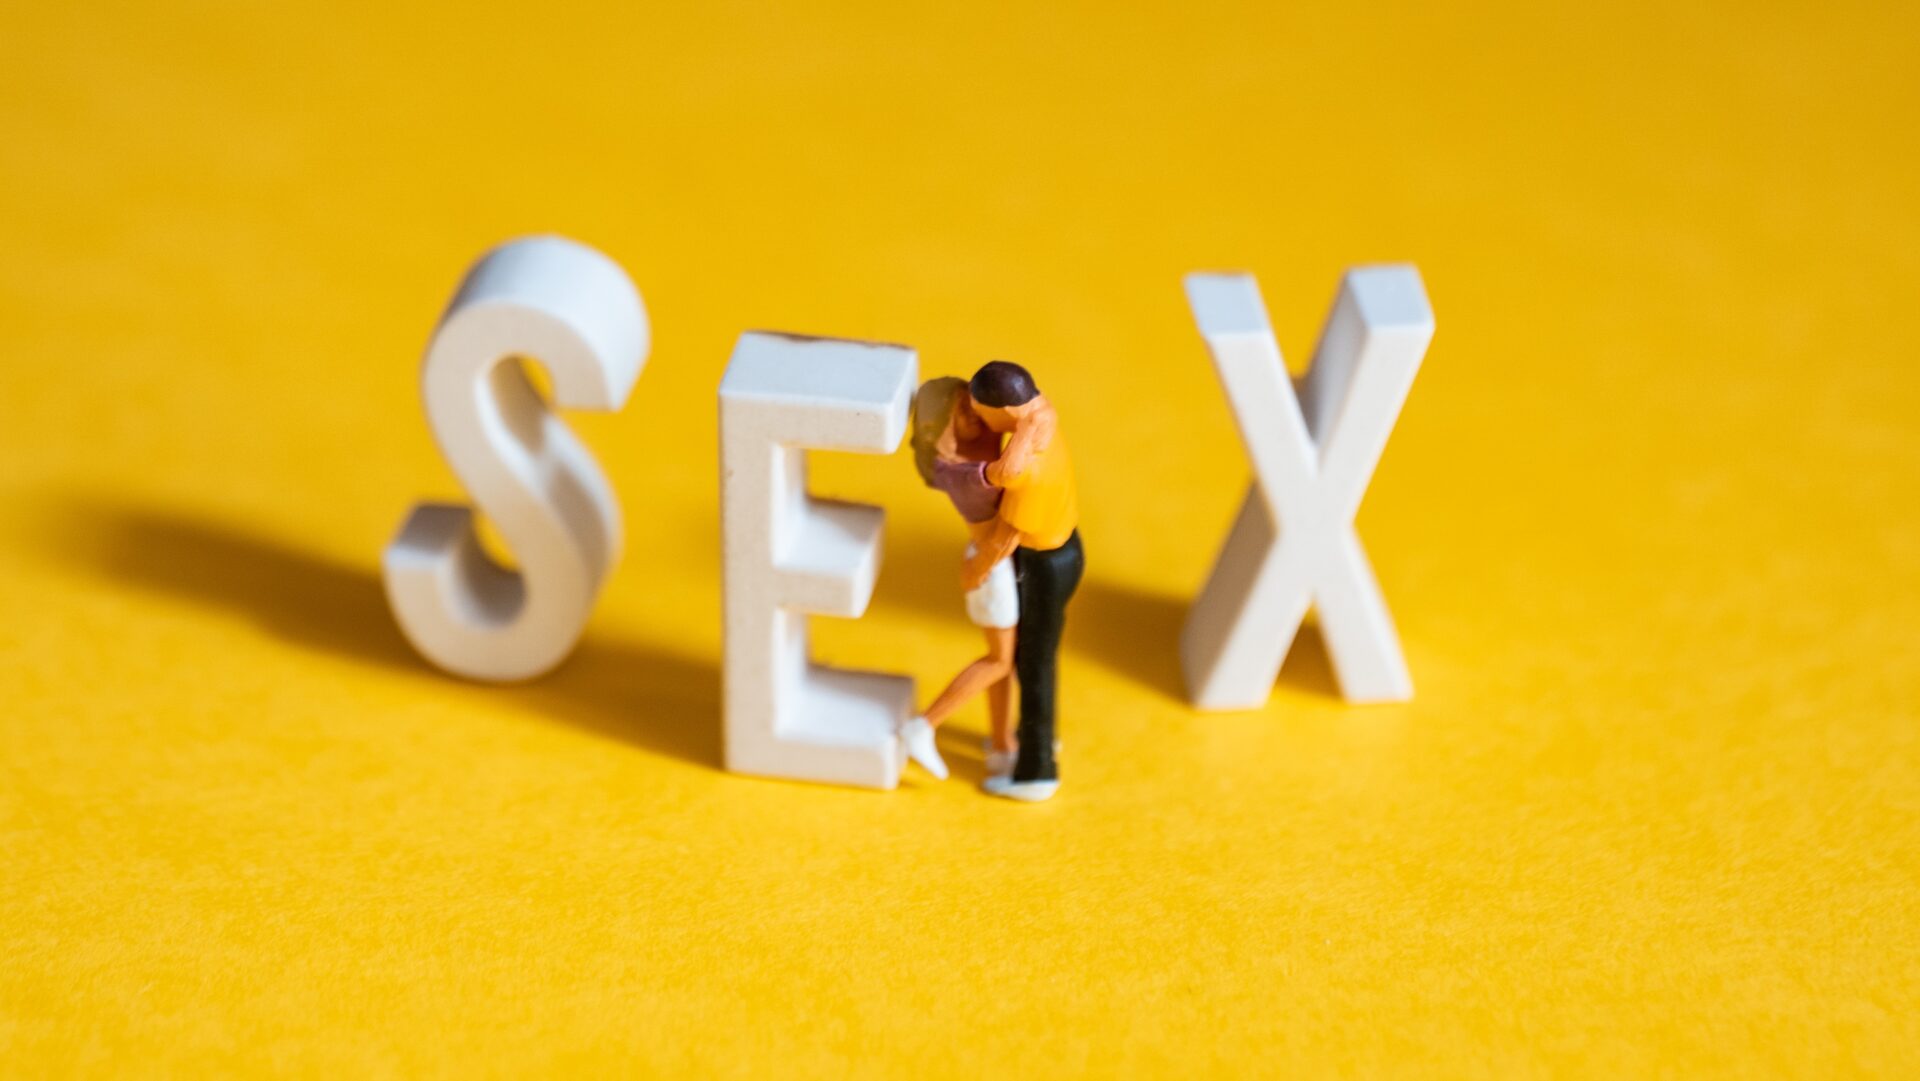 education sexuelle